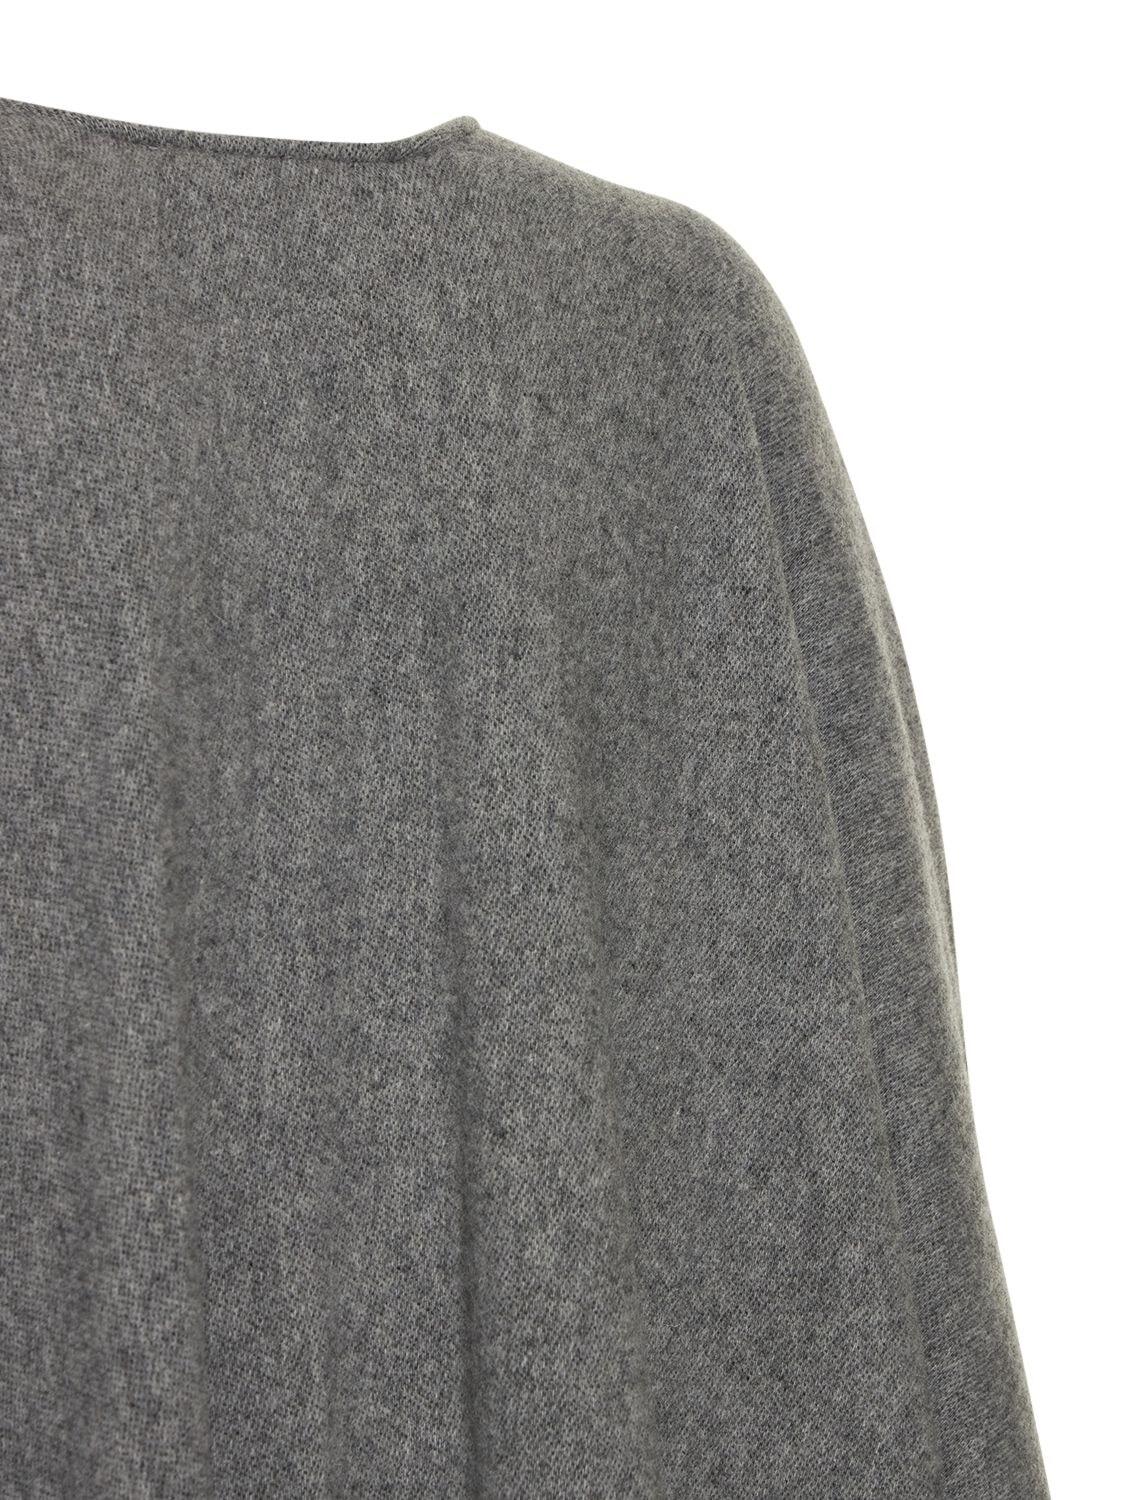 Max Mara Wolle Umhang Aus Wollmischgewebe Mit Logo oxford in Grau Damen Bekleidung Mäntel Capes 